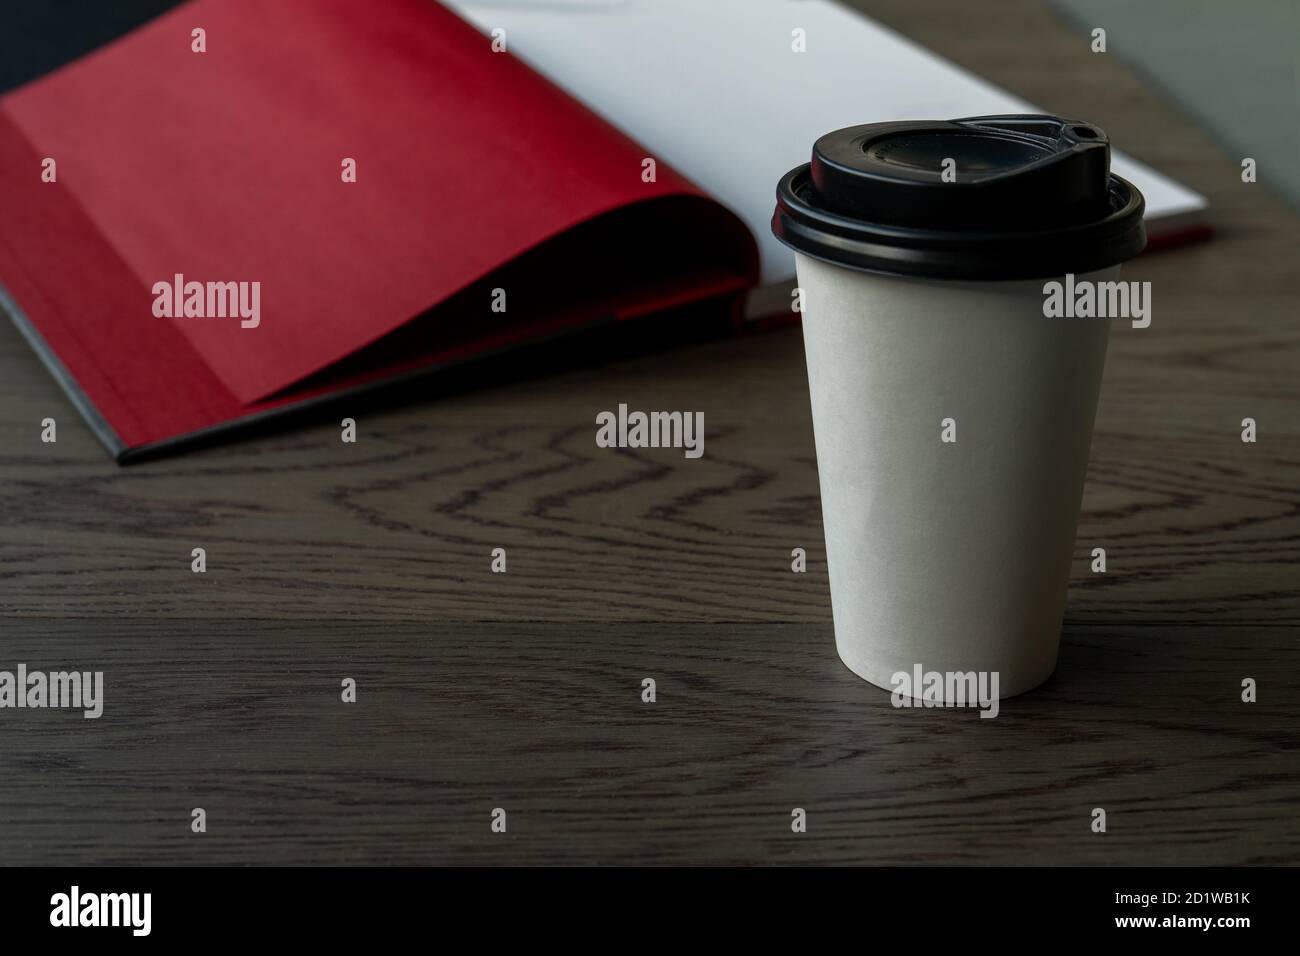 Caffè del mattino e un libro. Una tazza da caffè bianca usa e getta con coperchio nero su un tavolo di legno con libro aperto sullo sfondo. Horizontas Foto Stock